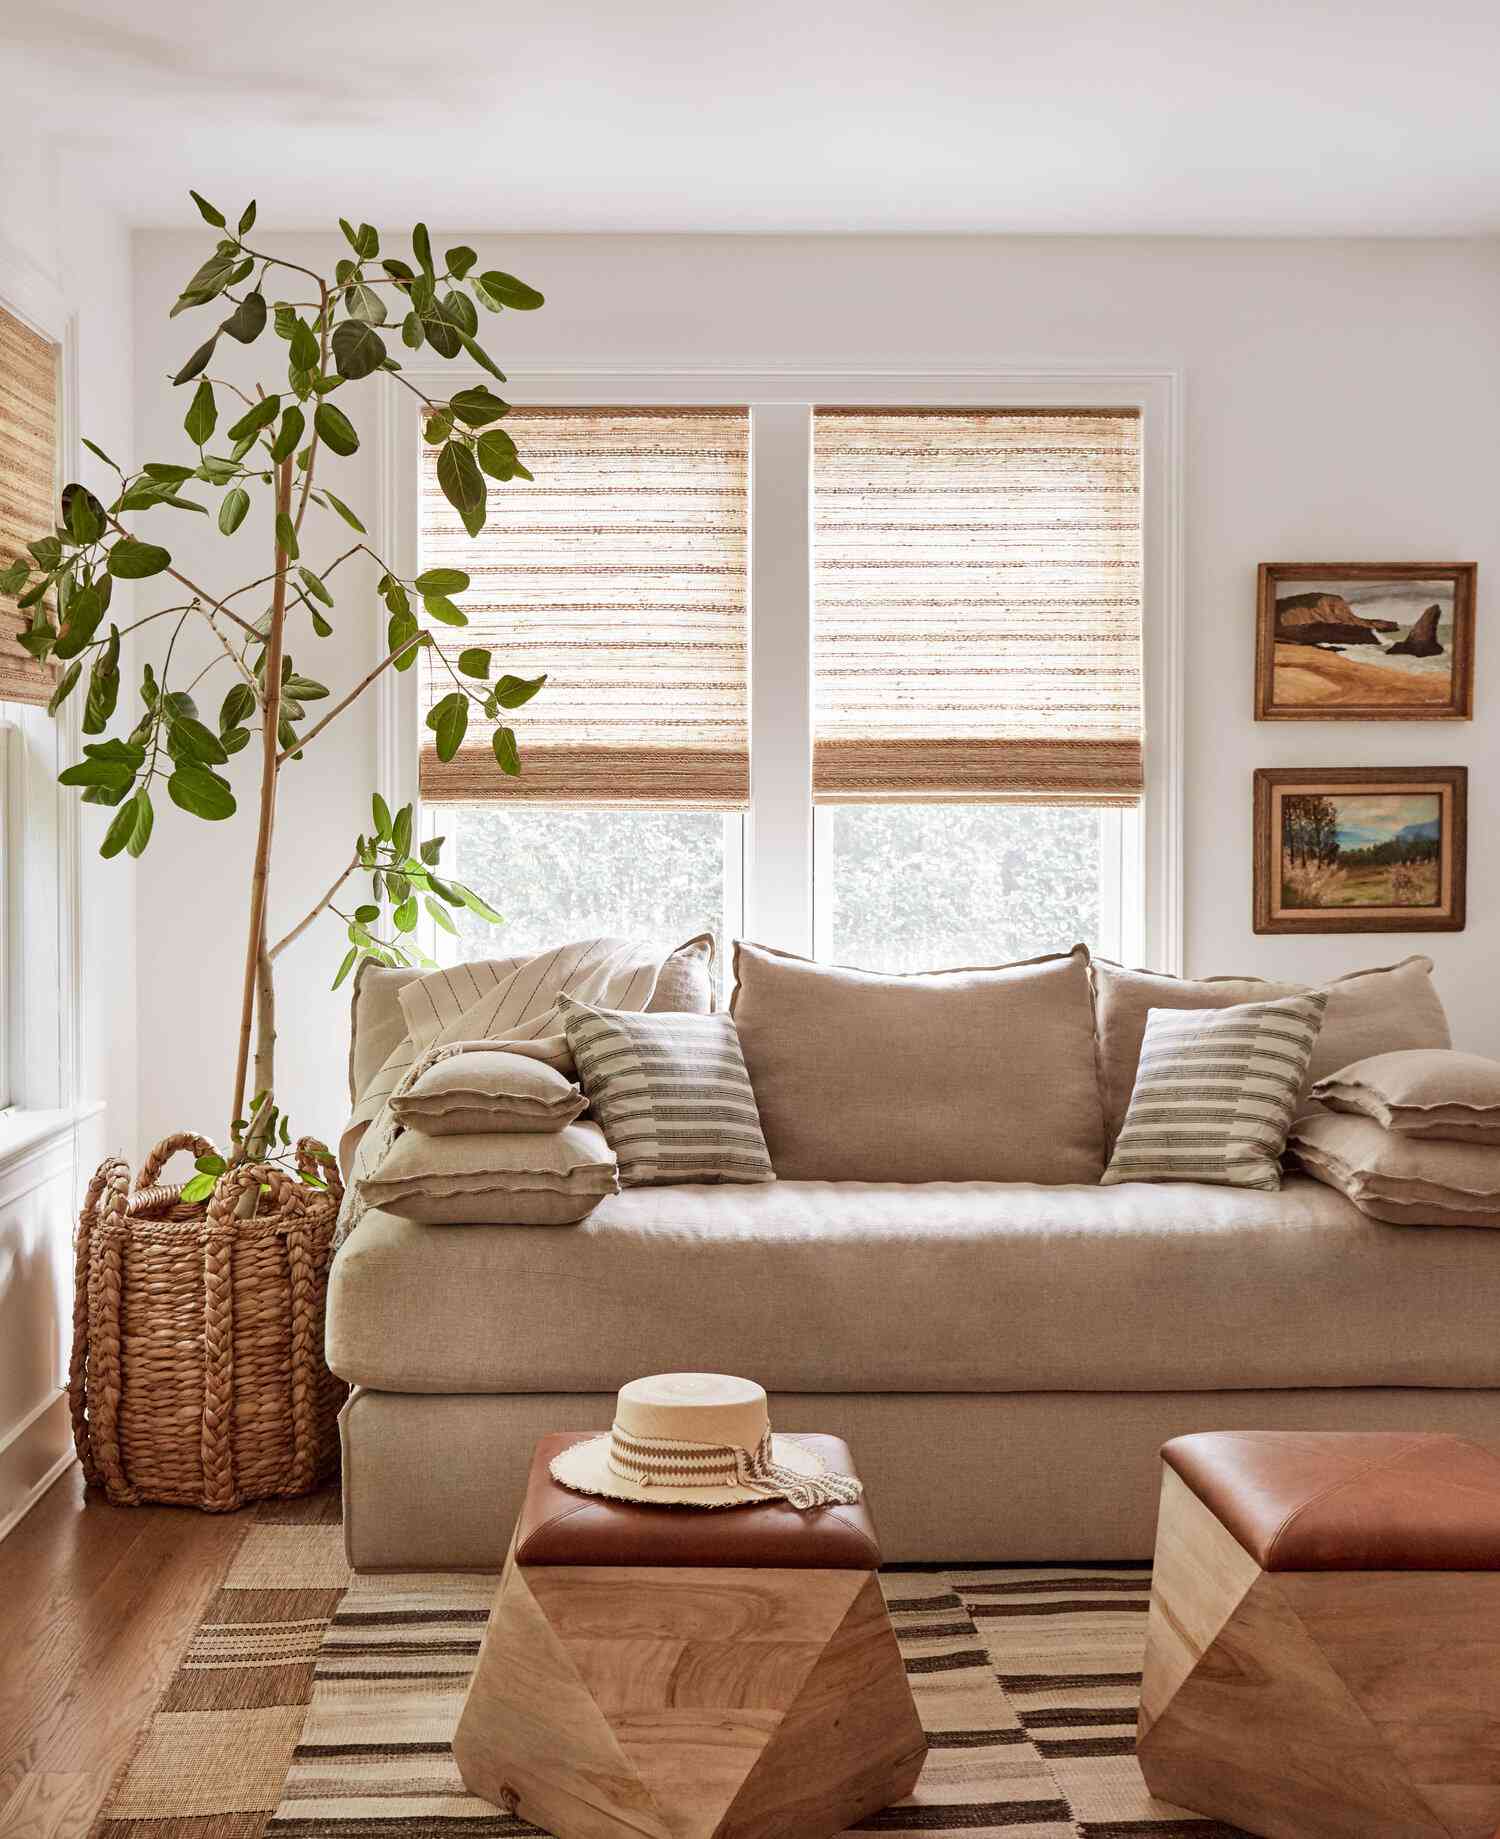 Ein Wohnzimmer mit mandelfarbenen und braunen Möbeln